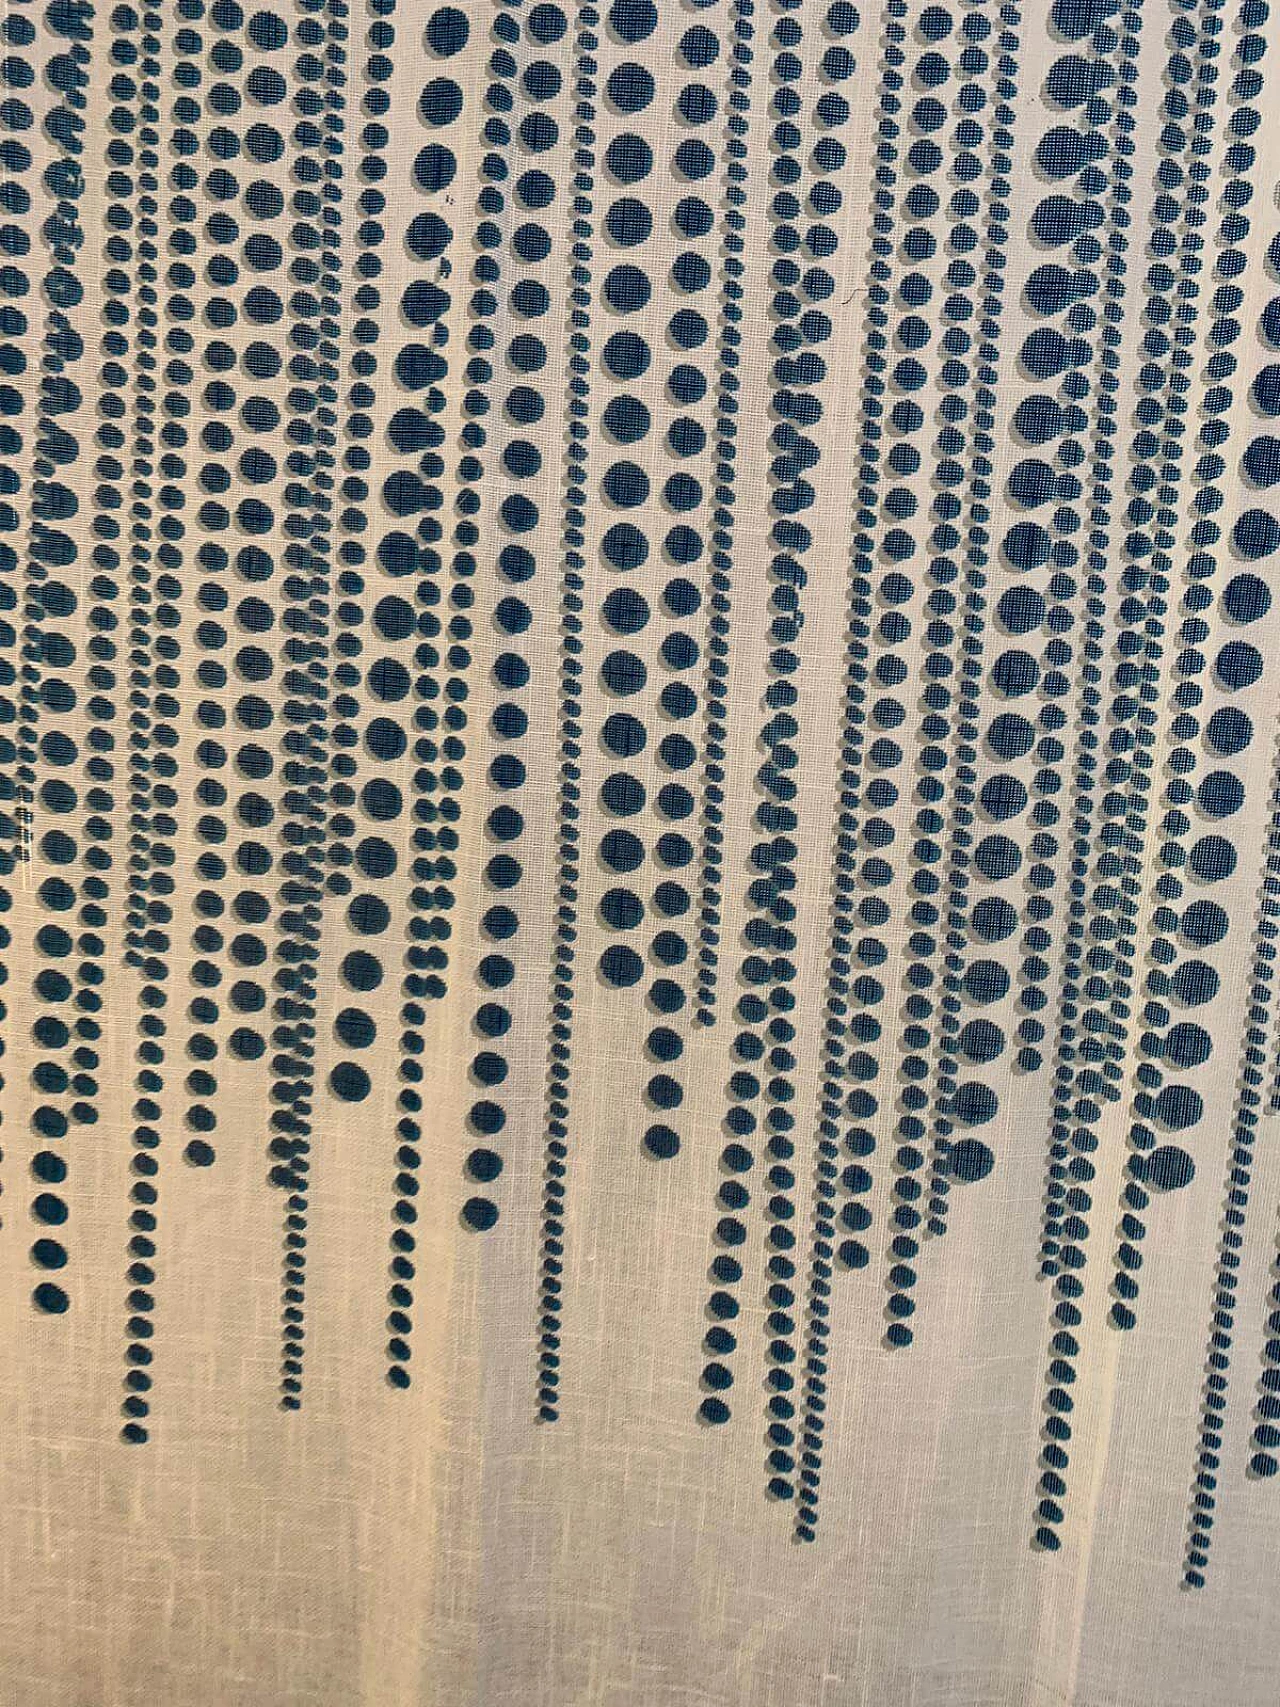 Fabric divider by Silvio Coppola for Tessitura di Mompiano, 1970s 1139354